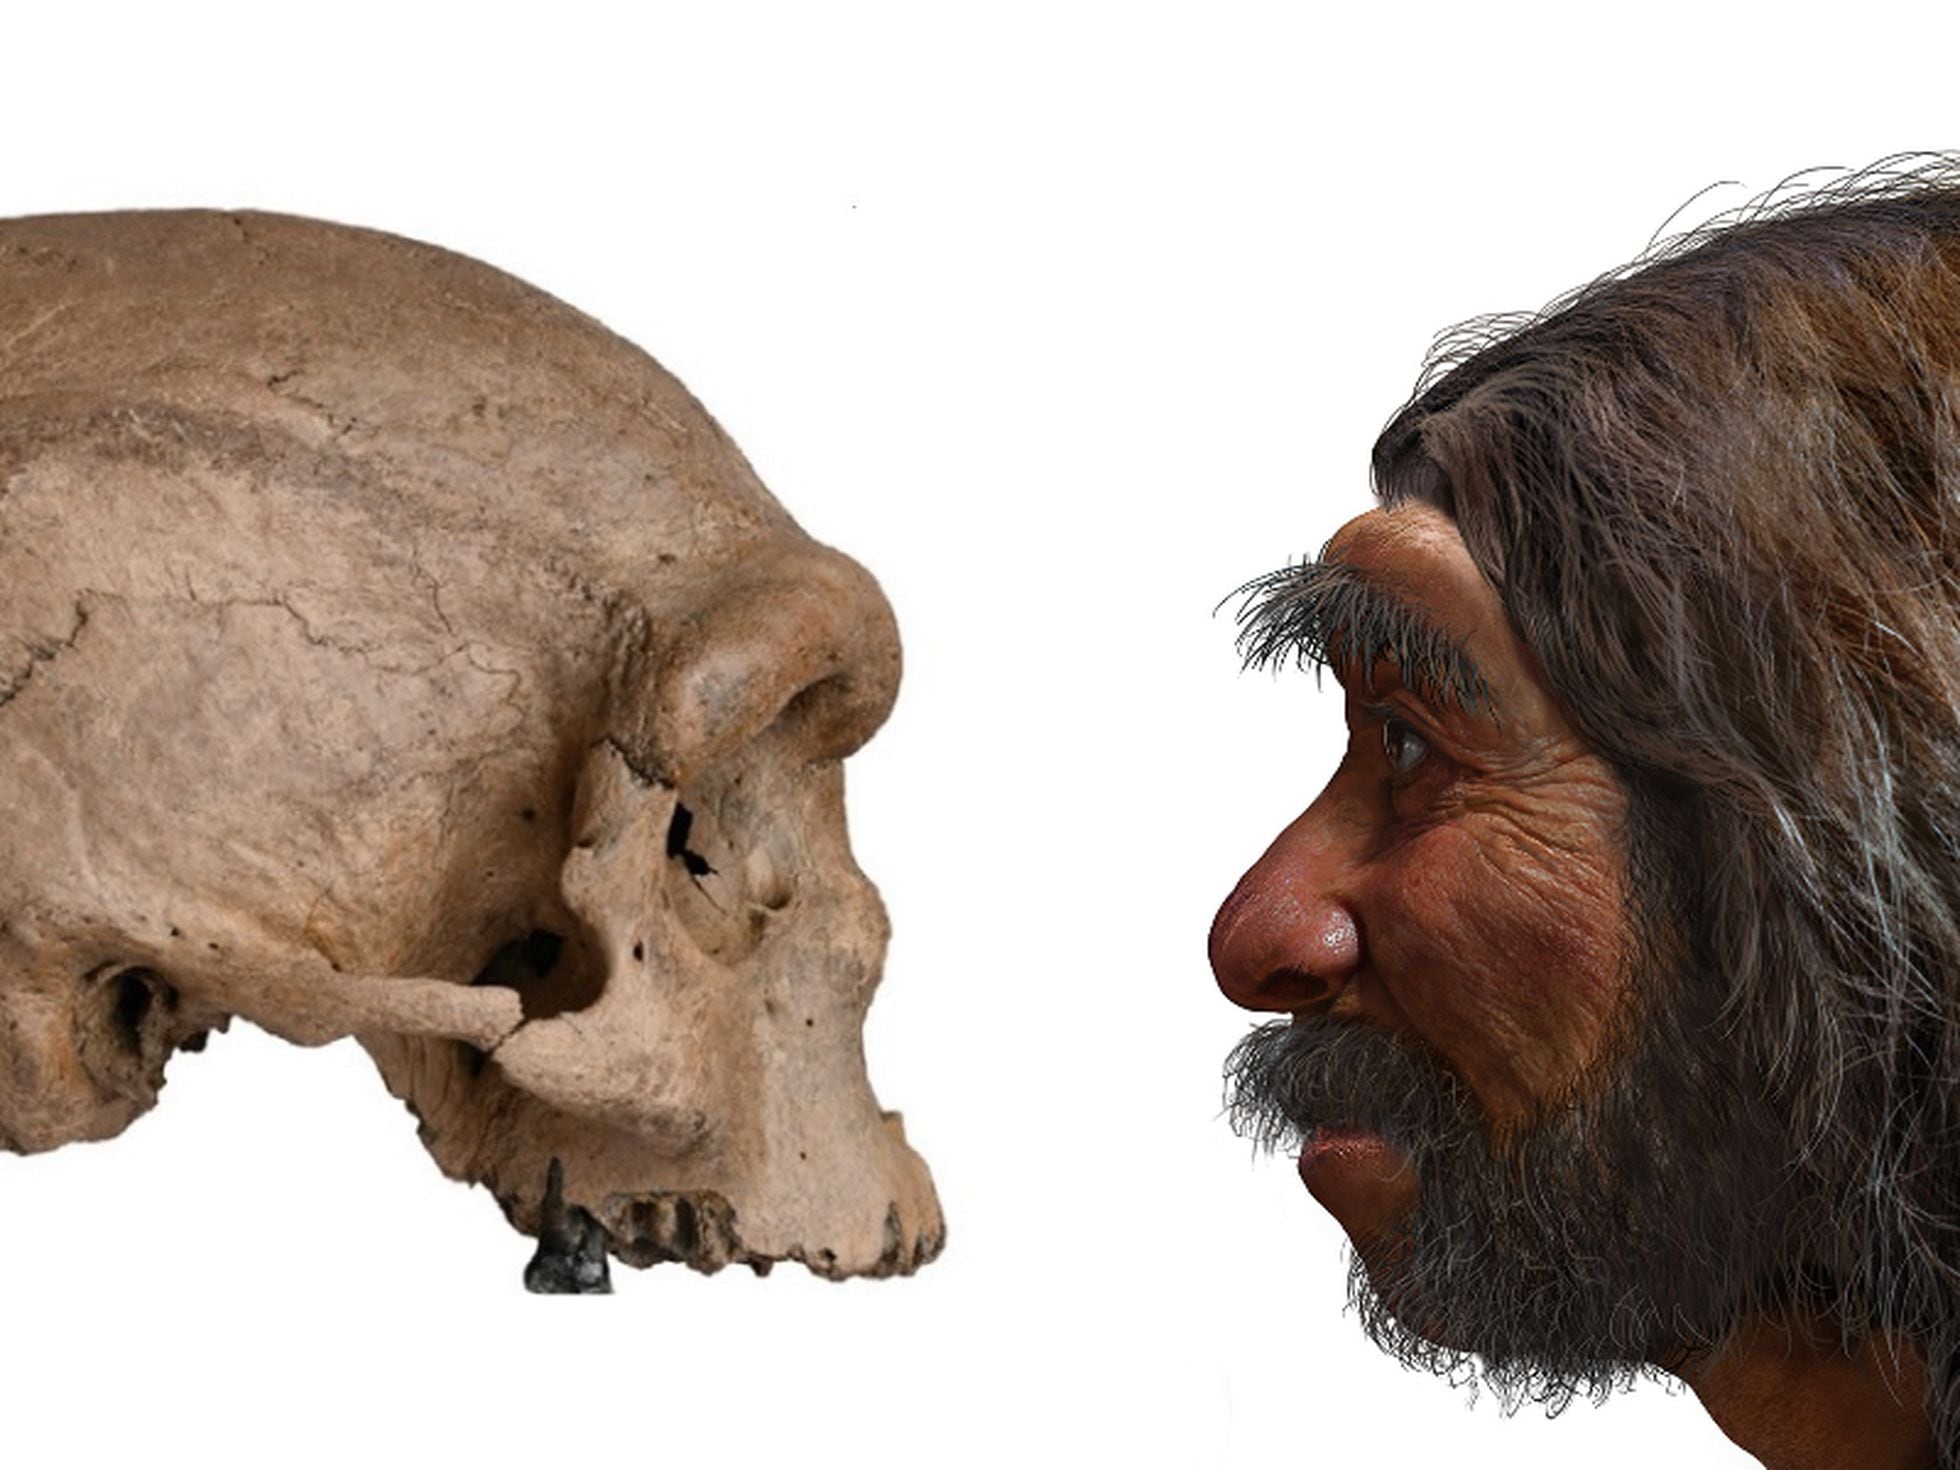 Sapiens” não é uma breve história da humanidade – Arqueologia e